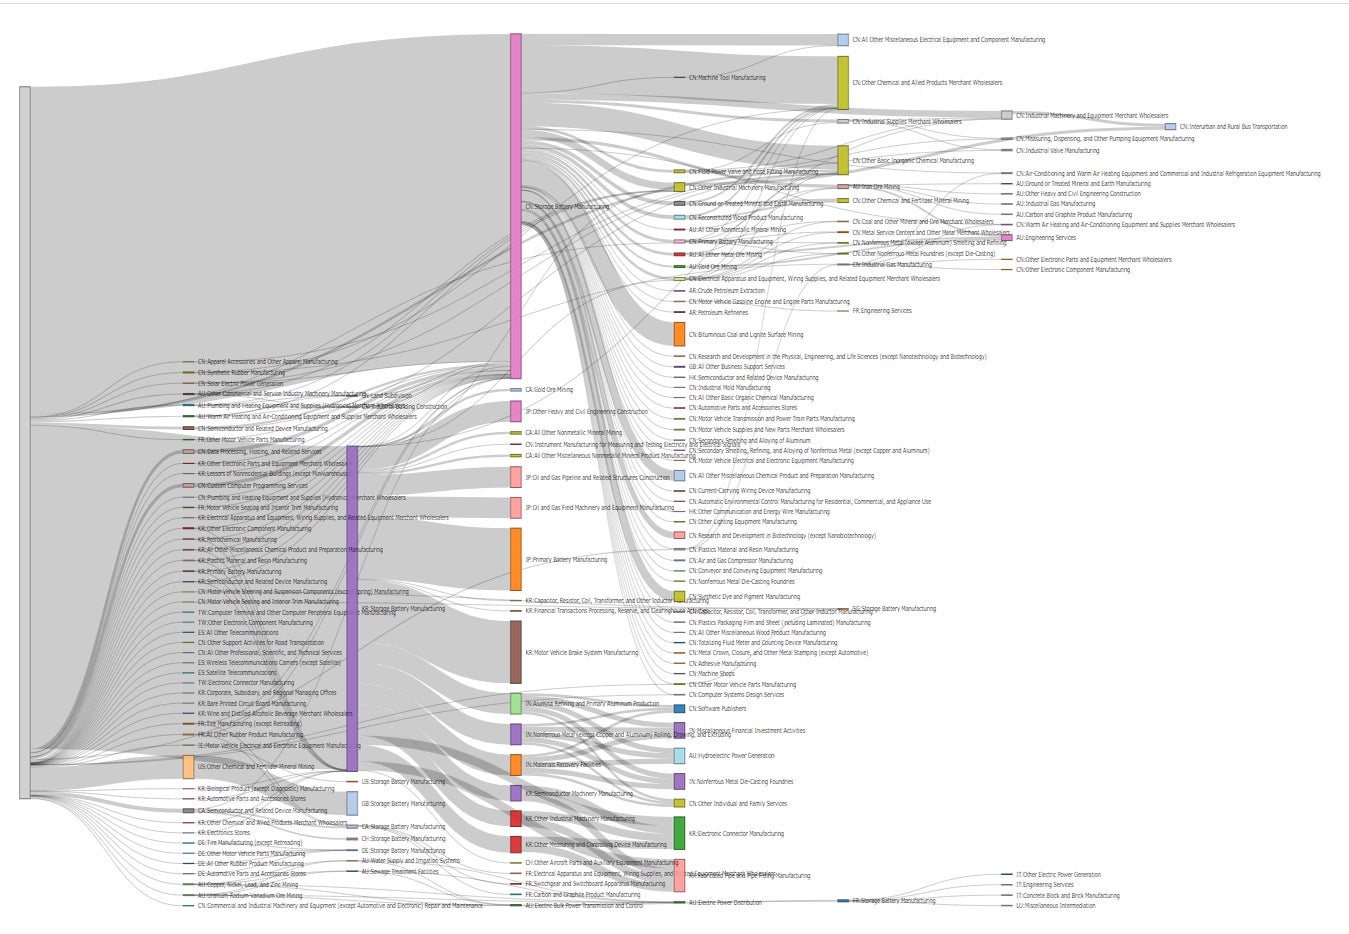 図：産業分類間の取引状態を俯瞰するサンキーダイアグラムの例